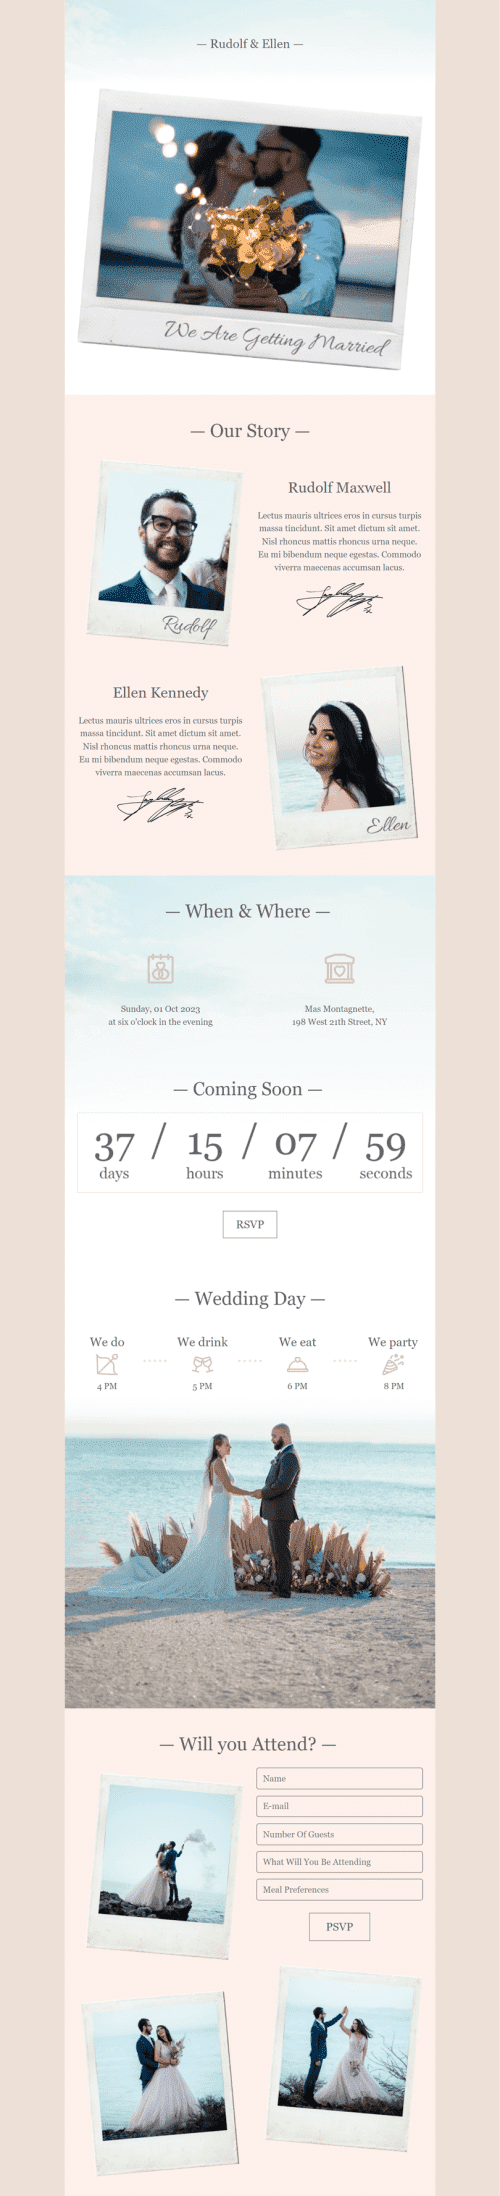 Шаблон письма к празднику Приглашение на свадьбу «Мы собираемся пожениться» для индустрии «Фотография» мобильный вид